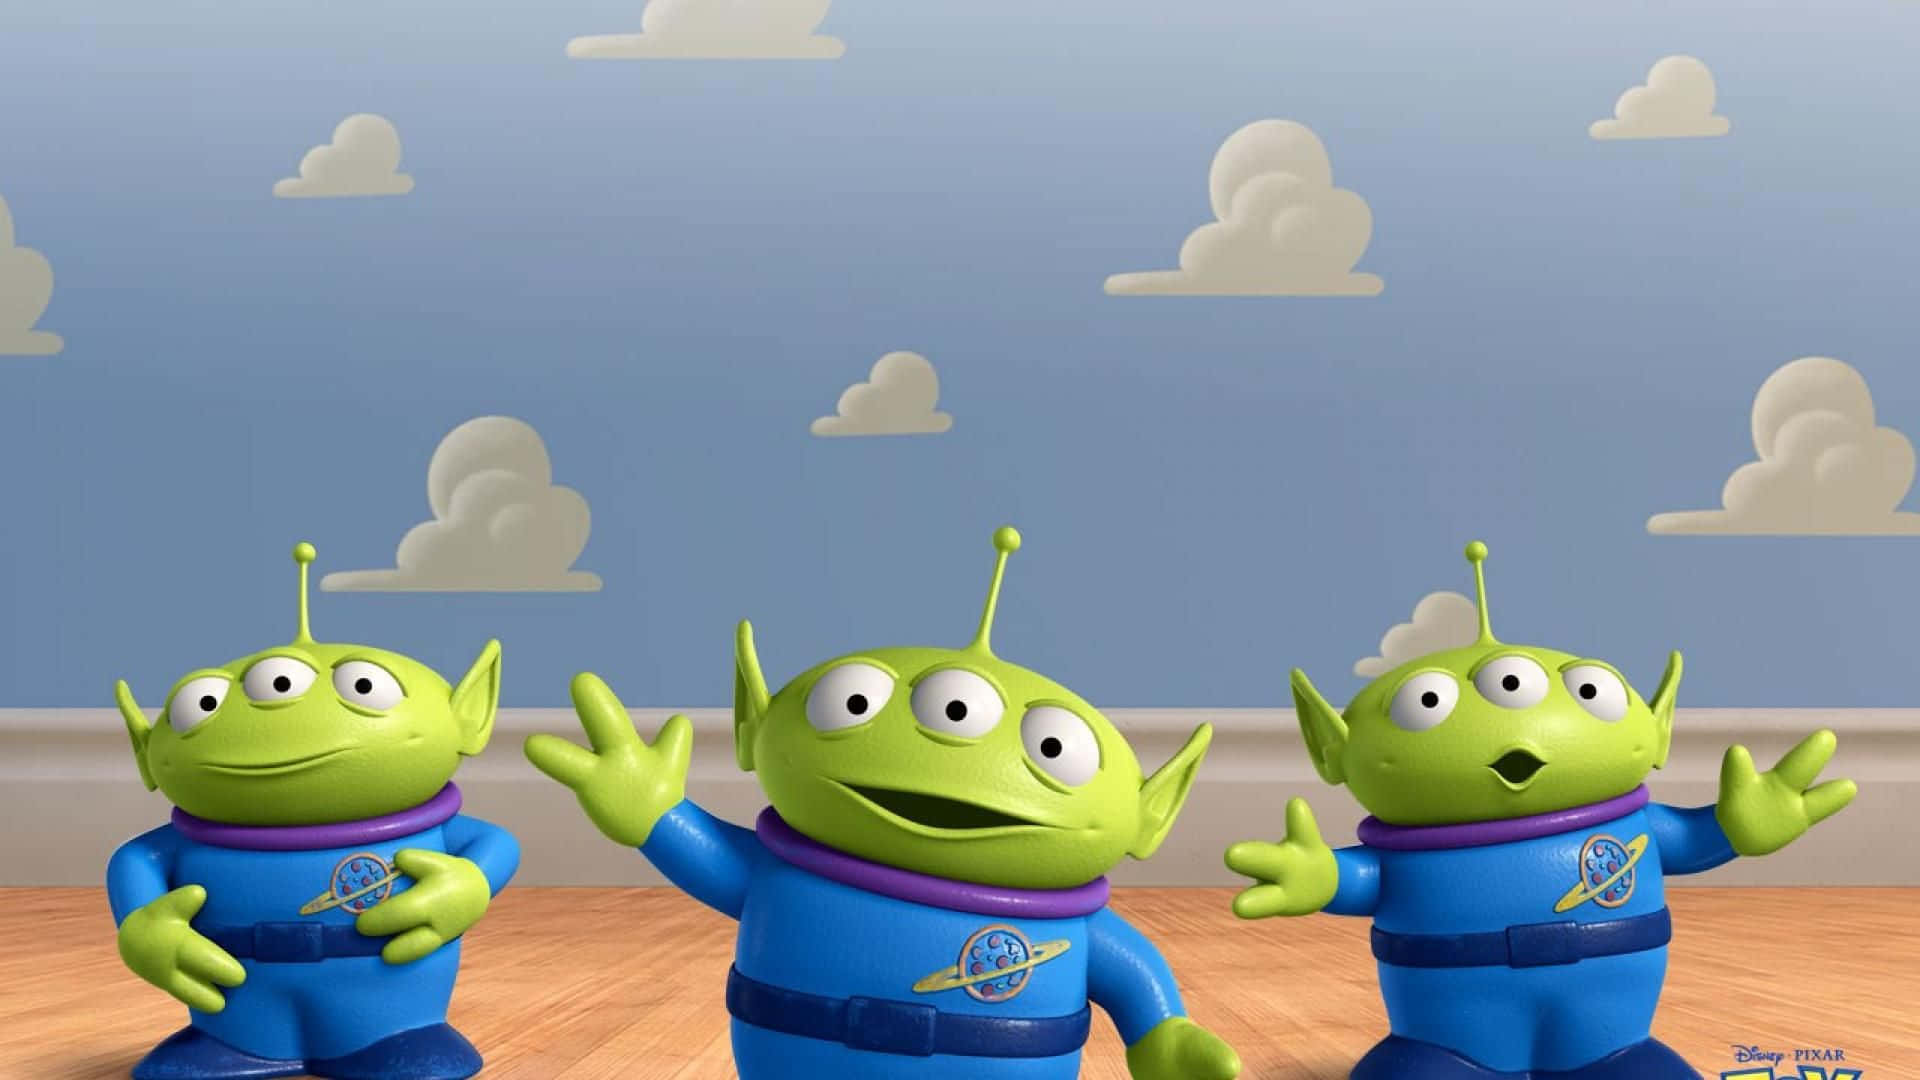 Nuvoleiconiche Di Toy Story Su Uno Sfondo Blu Cielo.